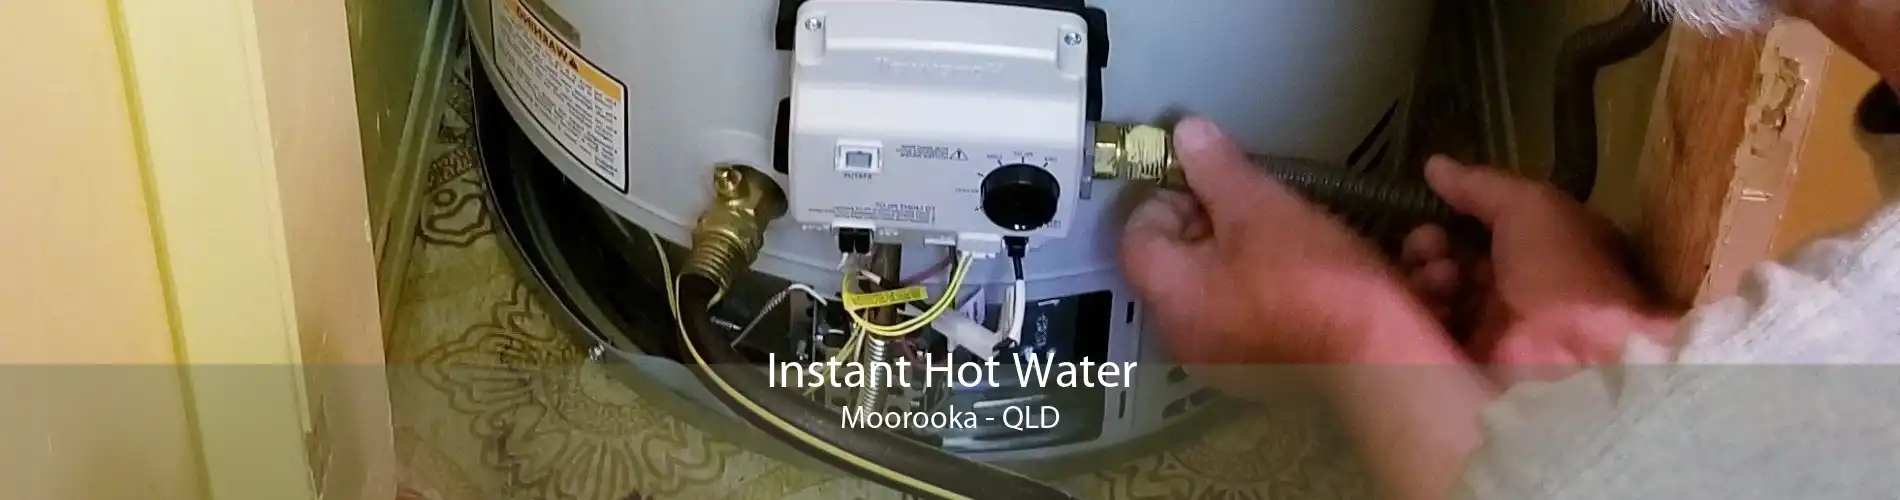 Instant Hot Water Moorooka - QLD